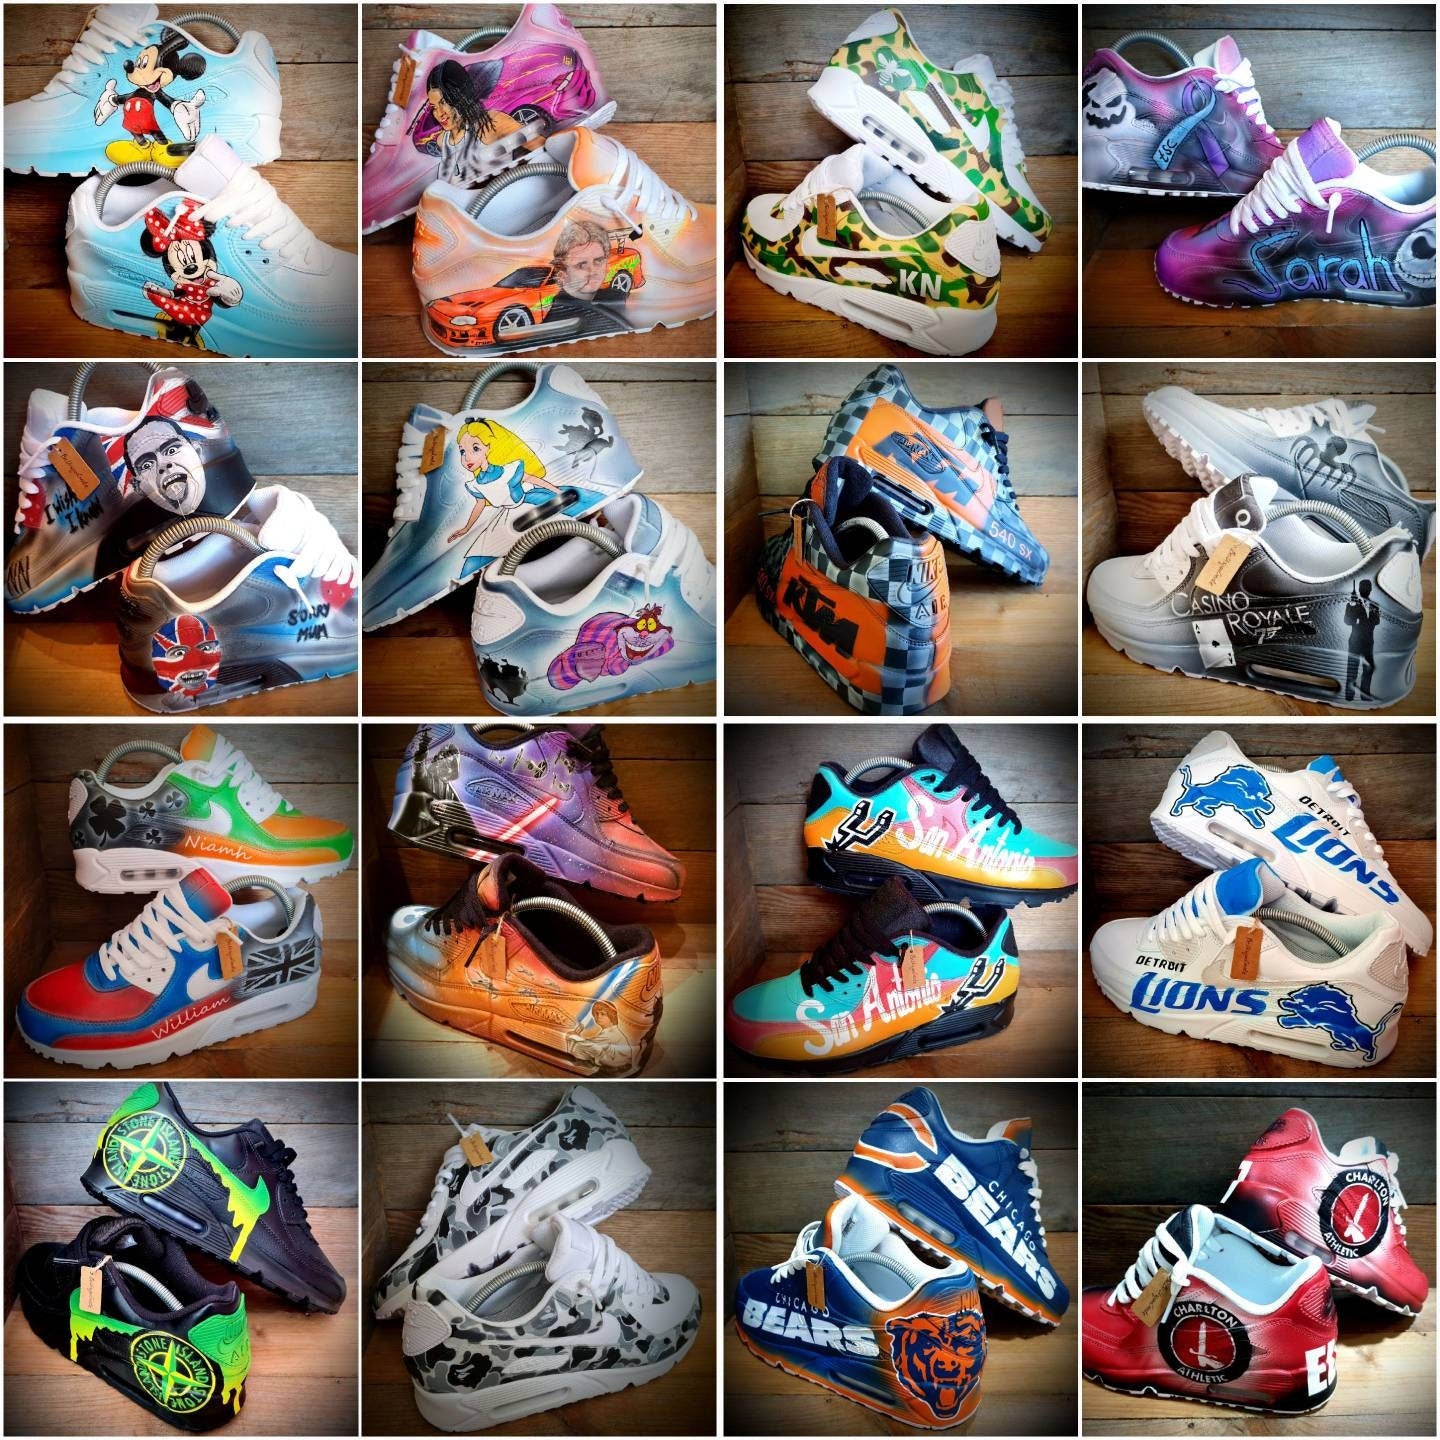 Custom Painted Air Max 90/Sneakers/Shoes/Kicks/Premium/Personalised/Graffiti Drip